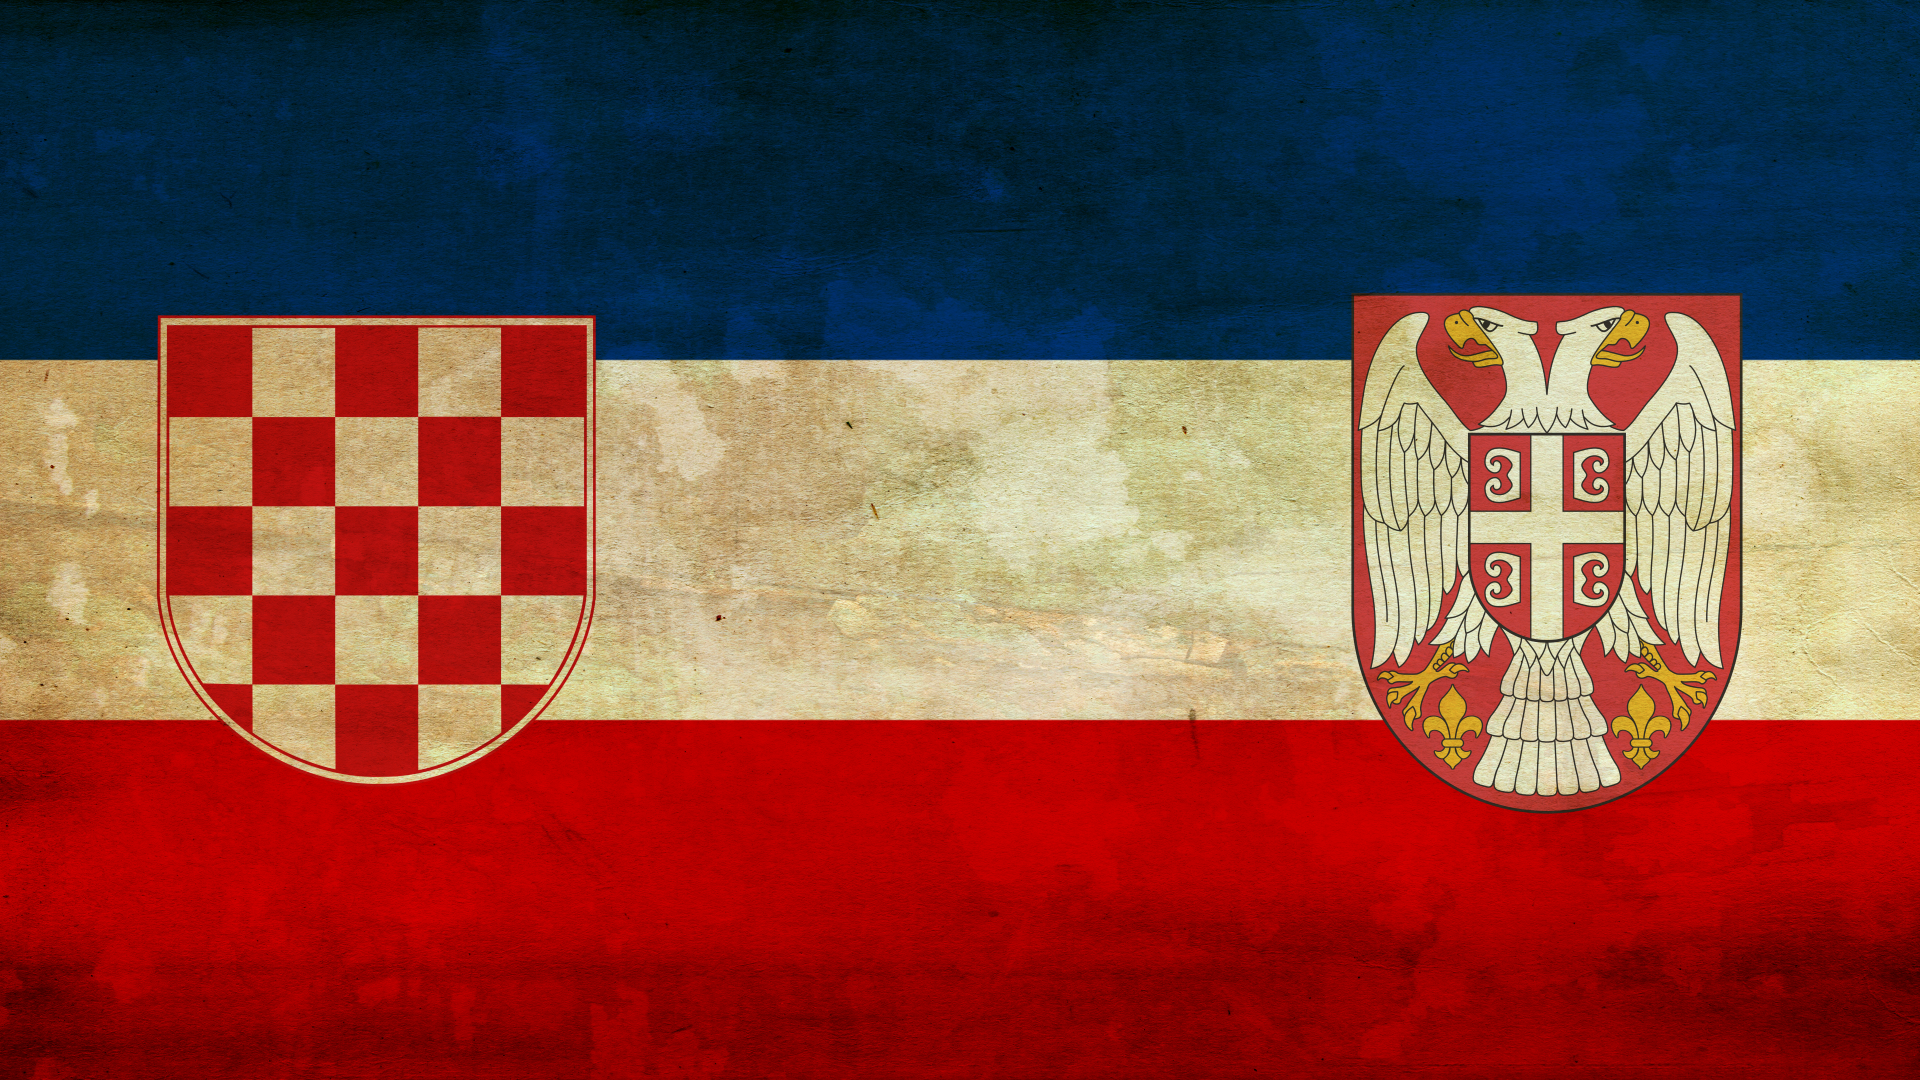 Yugoslavia/jugoslavija - Croatia , HD Wallpaper & Backgrounds